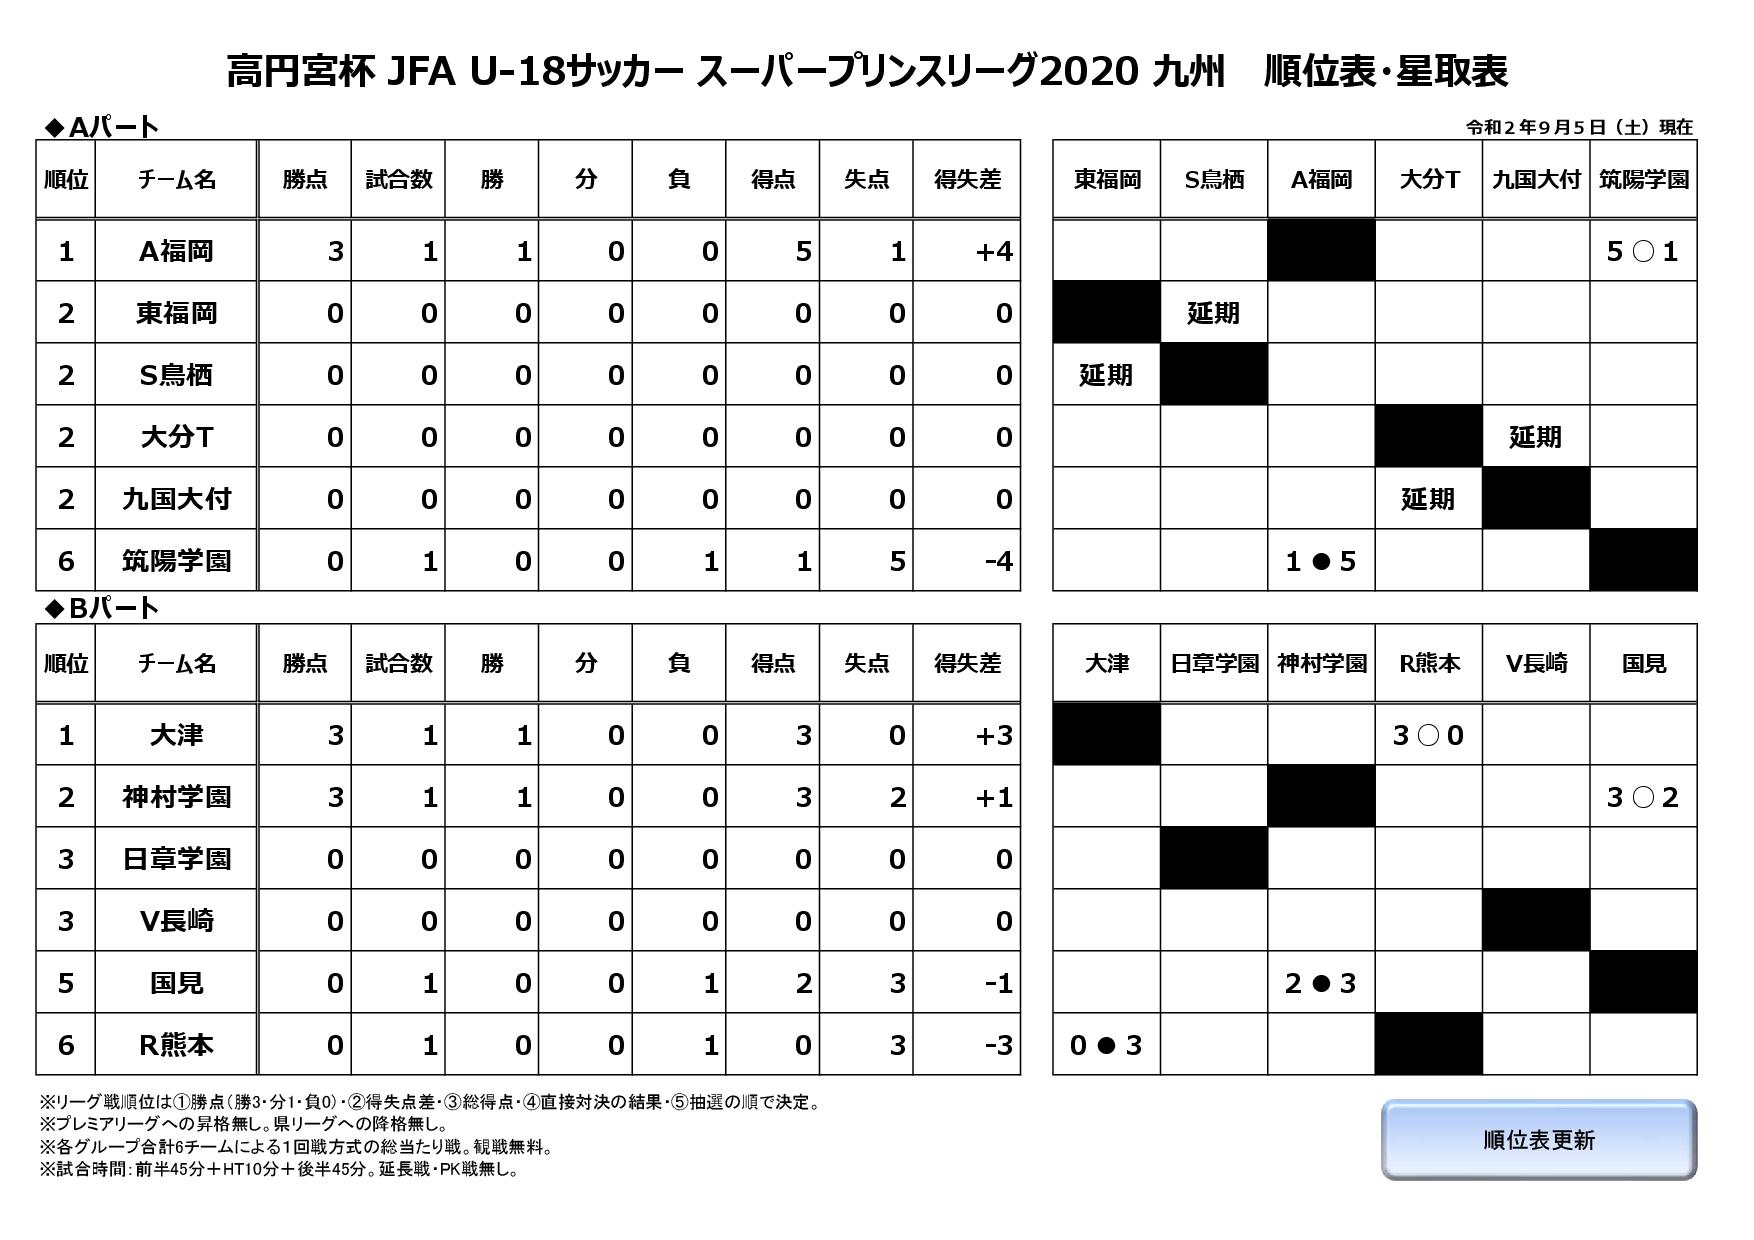 高円宮杯 JFA U-18サッカースーパープリンスリーグ2020九州